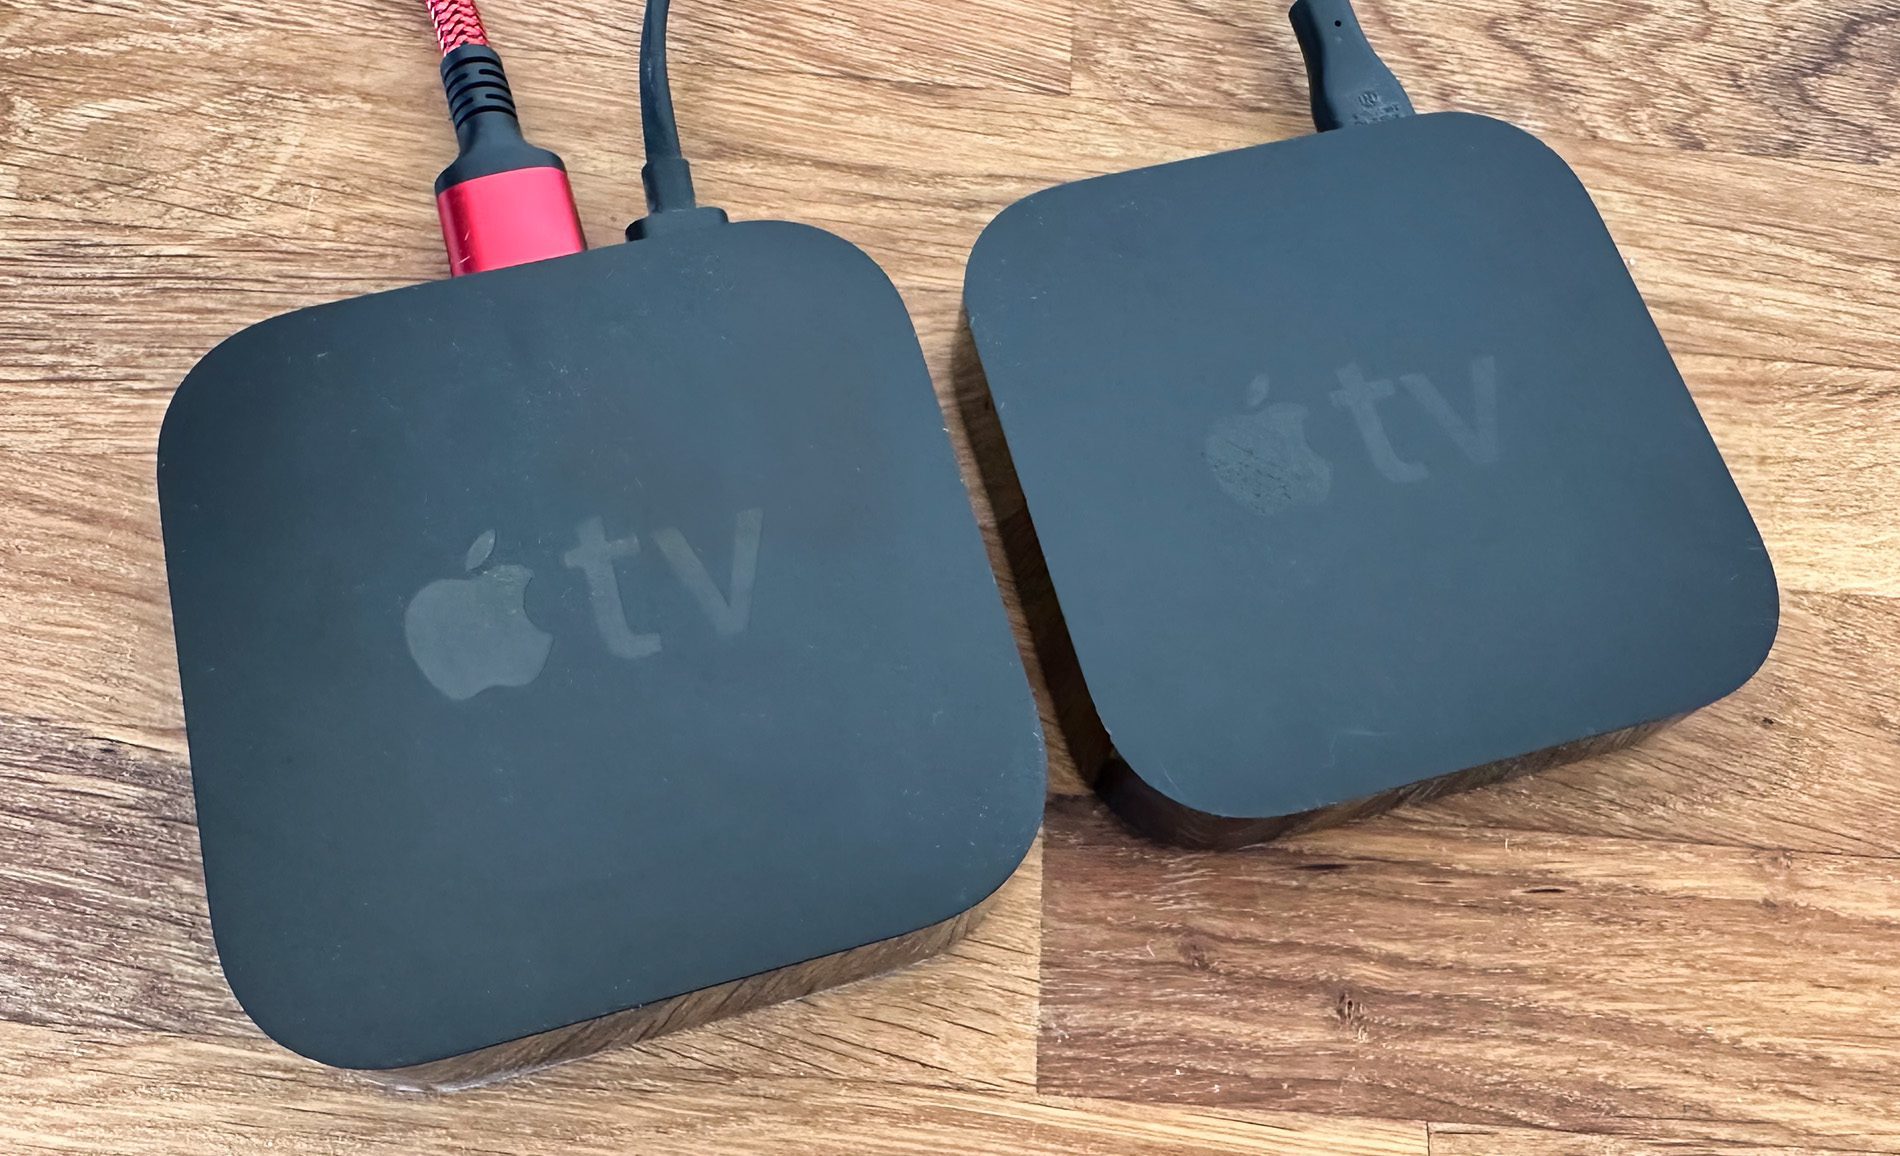 Wenn man von einem Apple TV auf einen neueren aktualisiert, kann man den alten zurücksetzen und verkaufen (Fotos: Sir Apfelot).